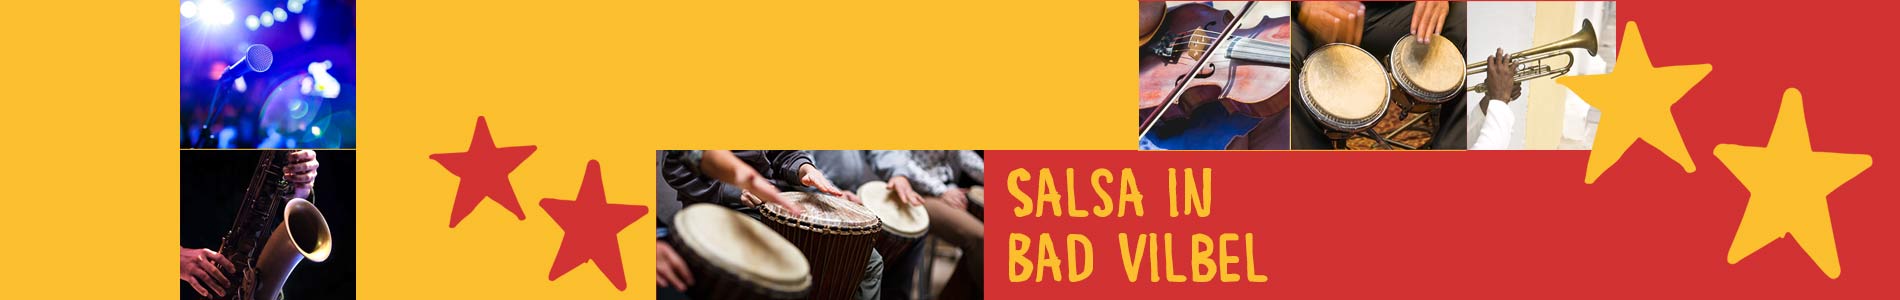 Salsa in Bad Vilbel – Salsa lernen und tanzen, Tanzkurse, Partys, Veranstaltungen